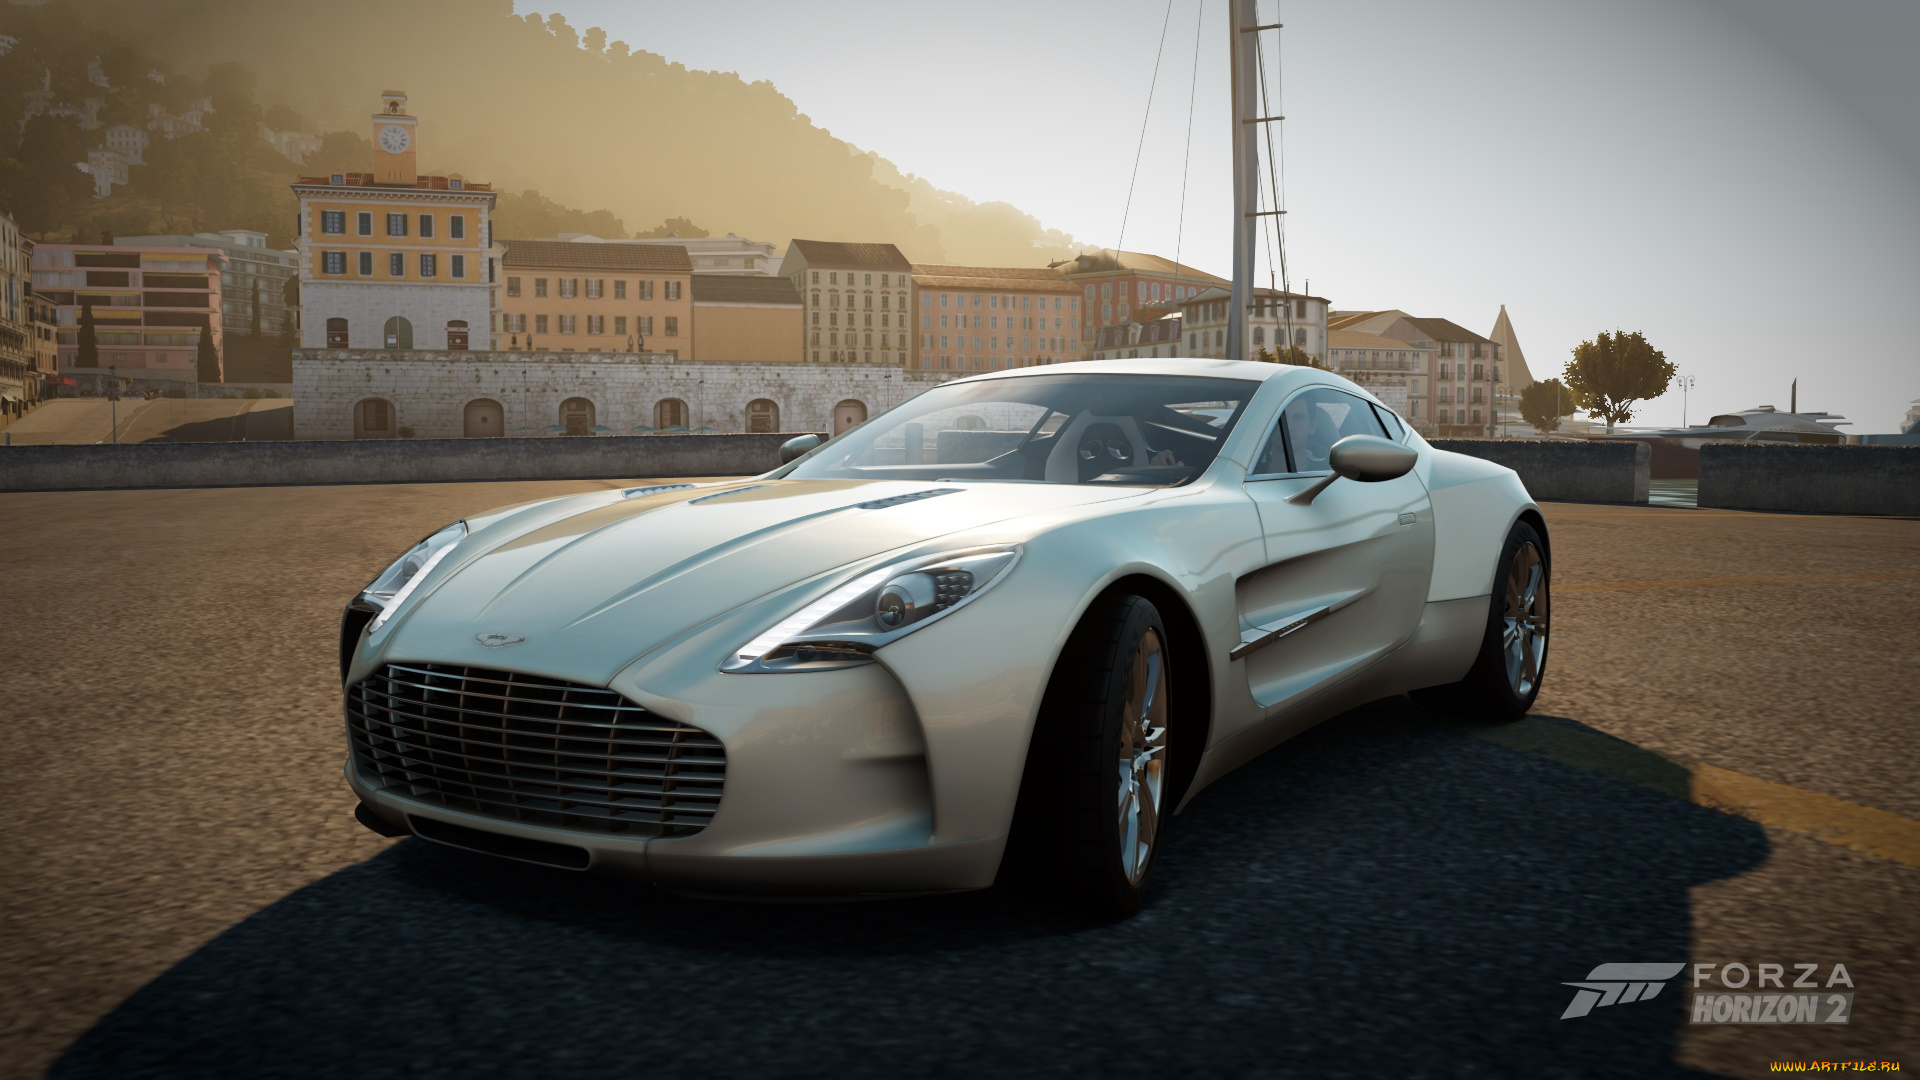 Forza 2 pc. Aston Martin в Forza Horizon 2. Forza Horizon 2. Горизонт 2 машины. Forza Horizon 2 видео.